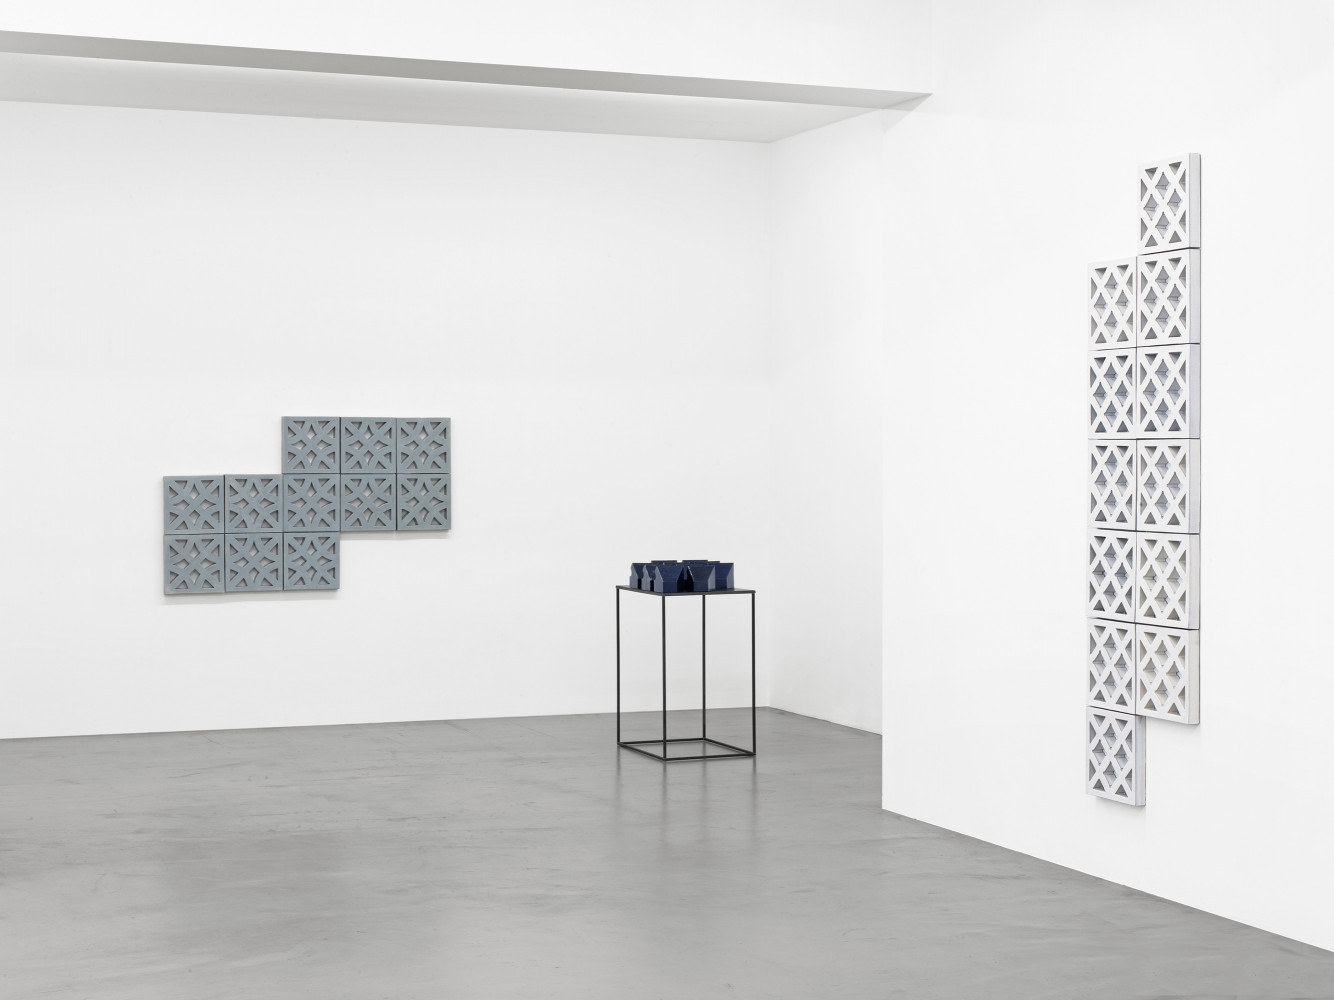 Bettina Pousttchi, ‘Ceramics’, Installation view, Buchmann Galerie, 2016